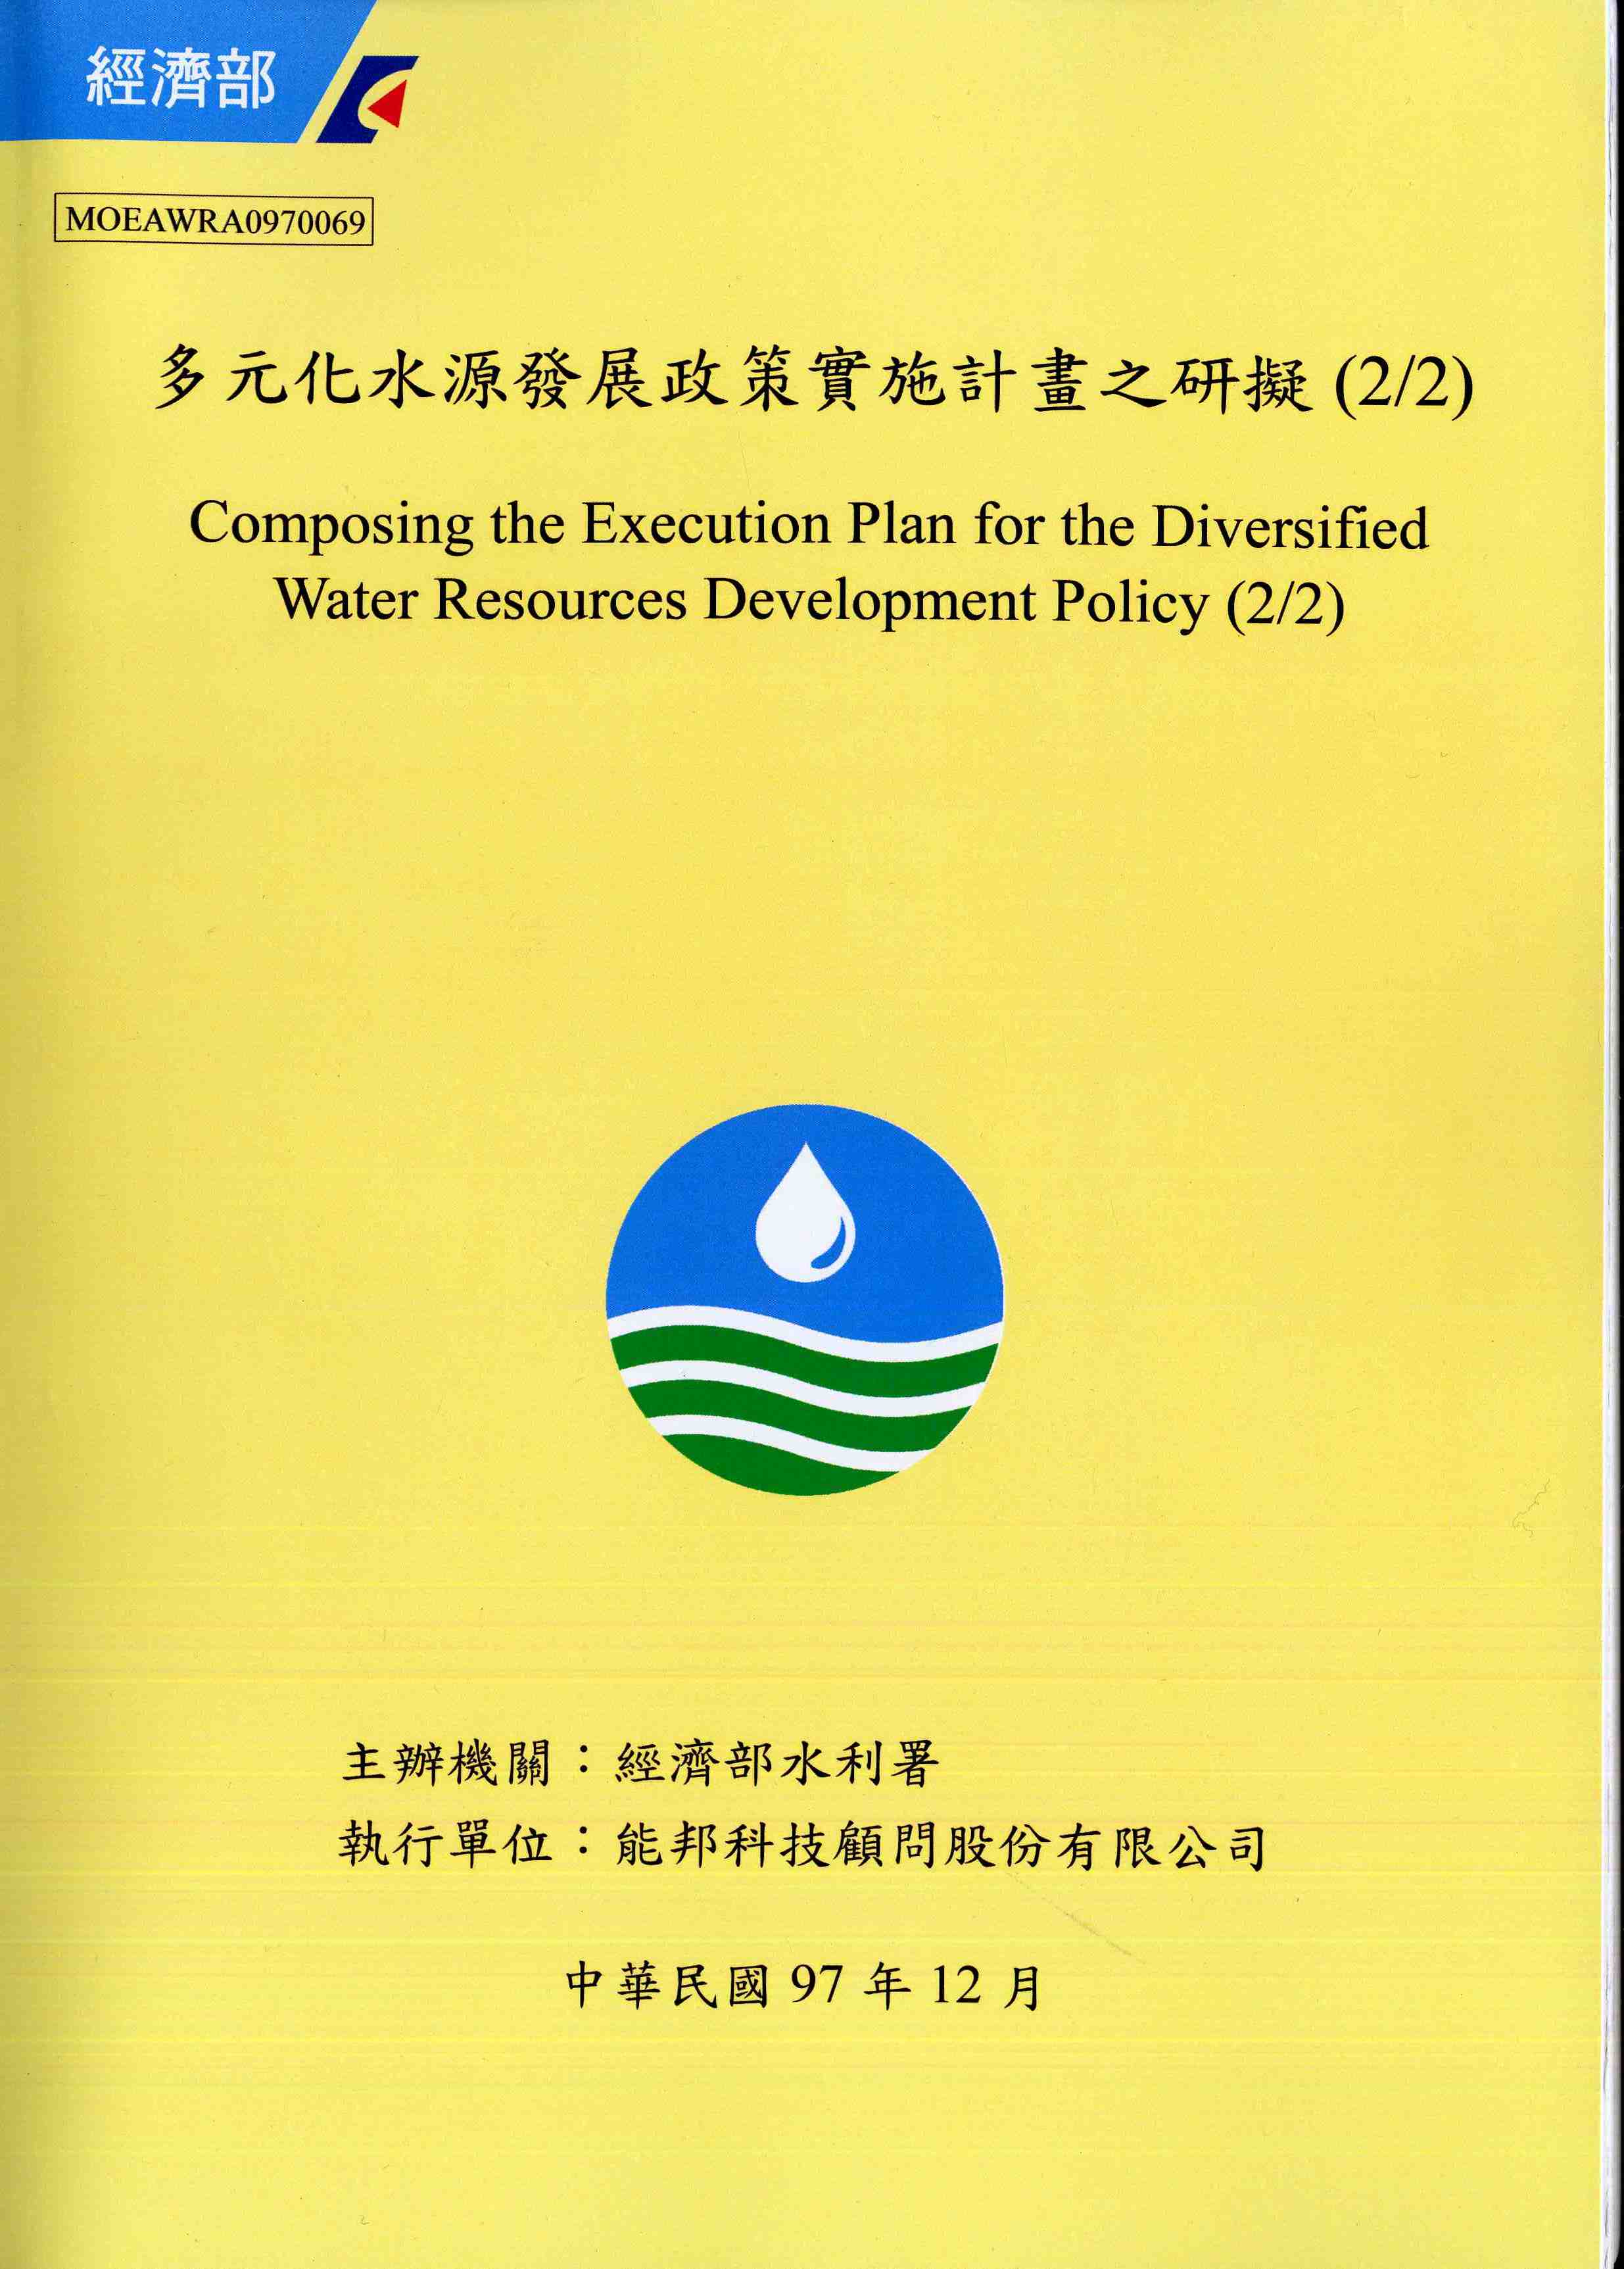 多元化水源發展政策實施計畫之研擬(2/2)